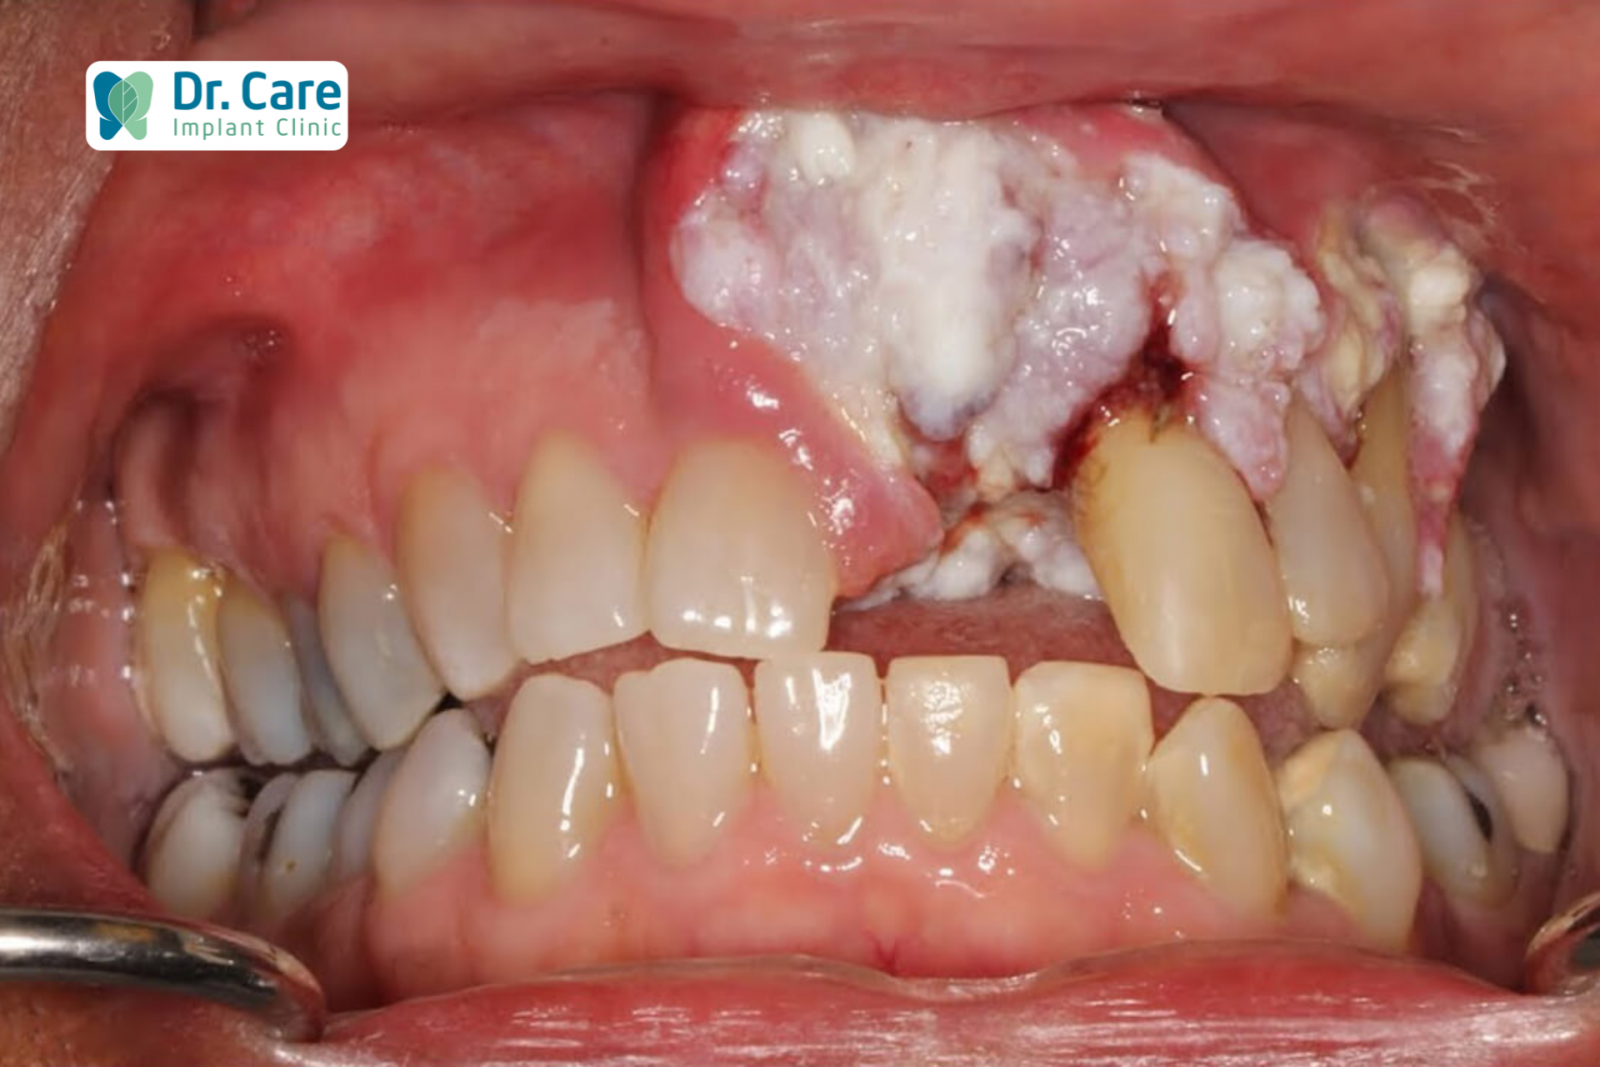 Ung thư nướu răng là gì?